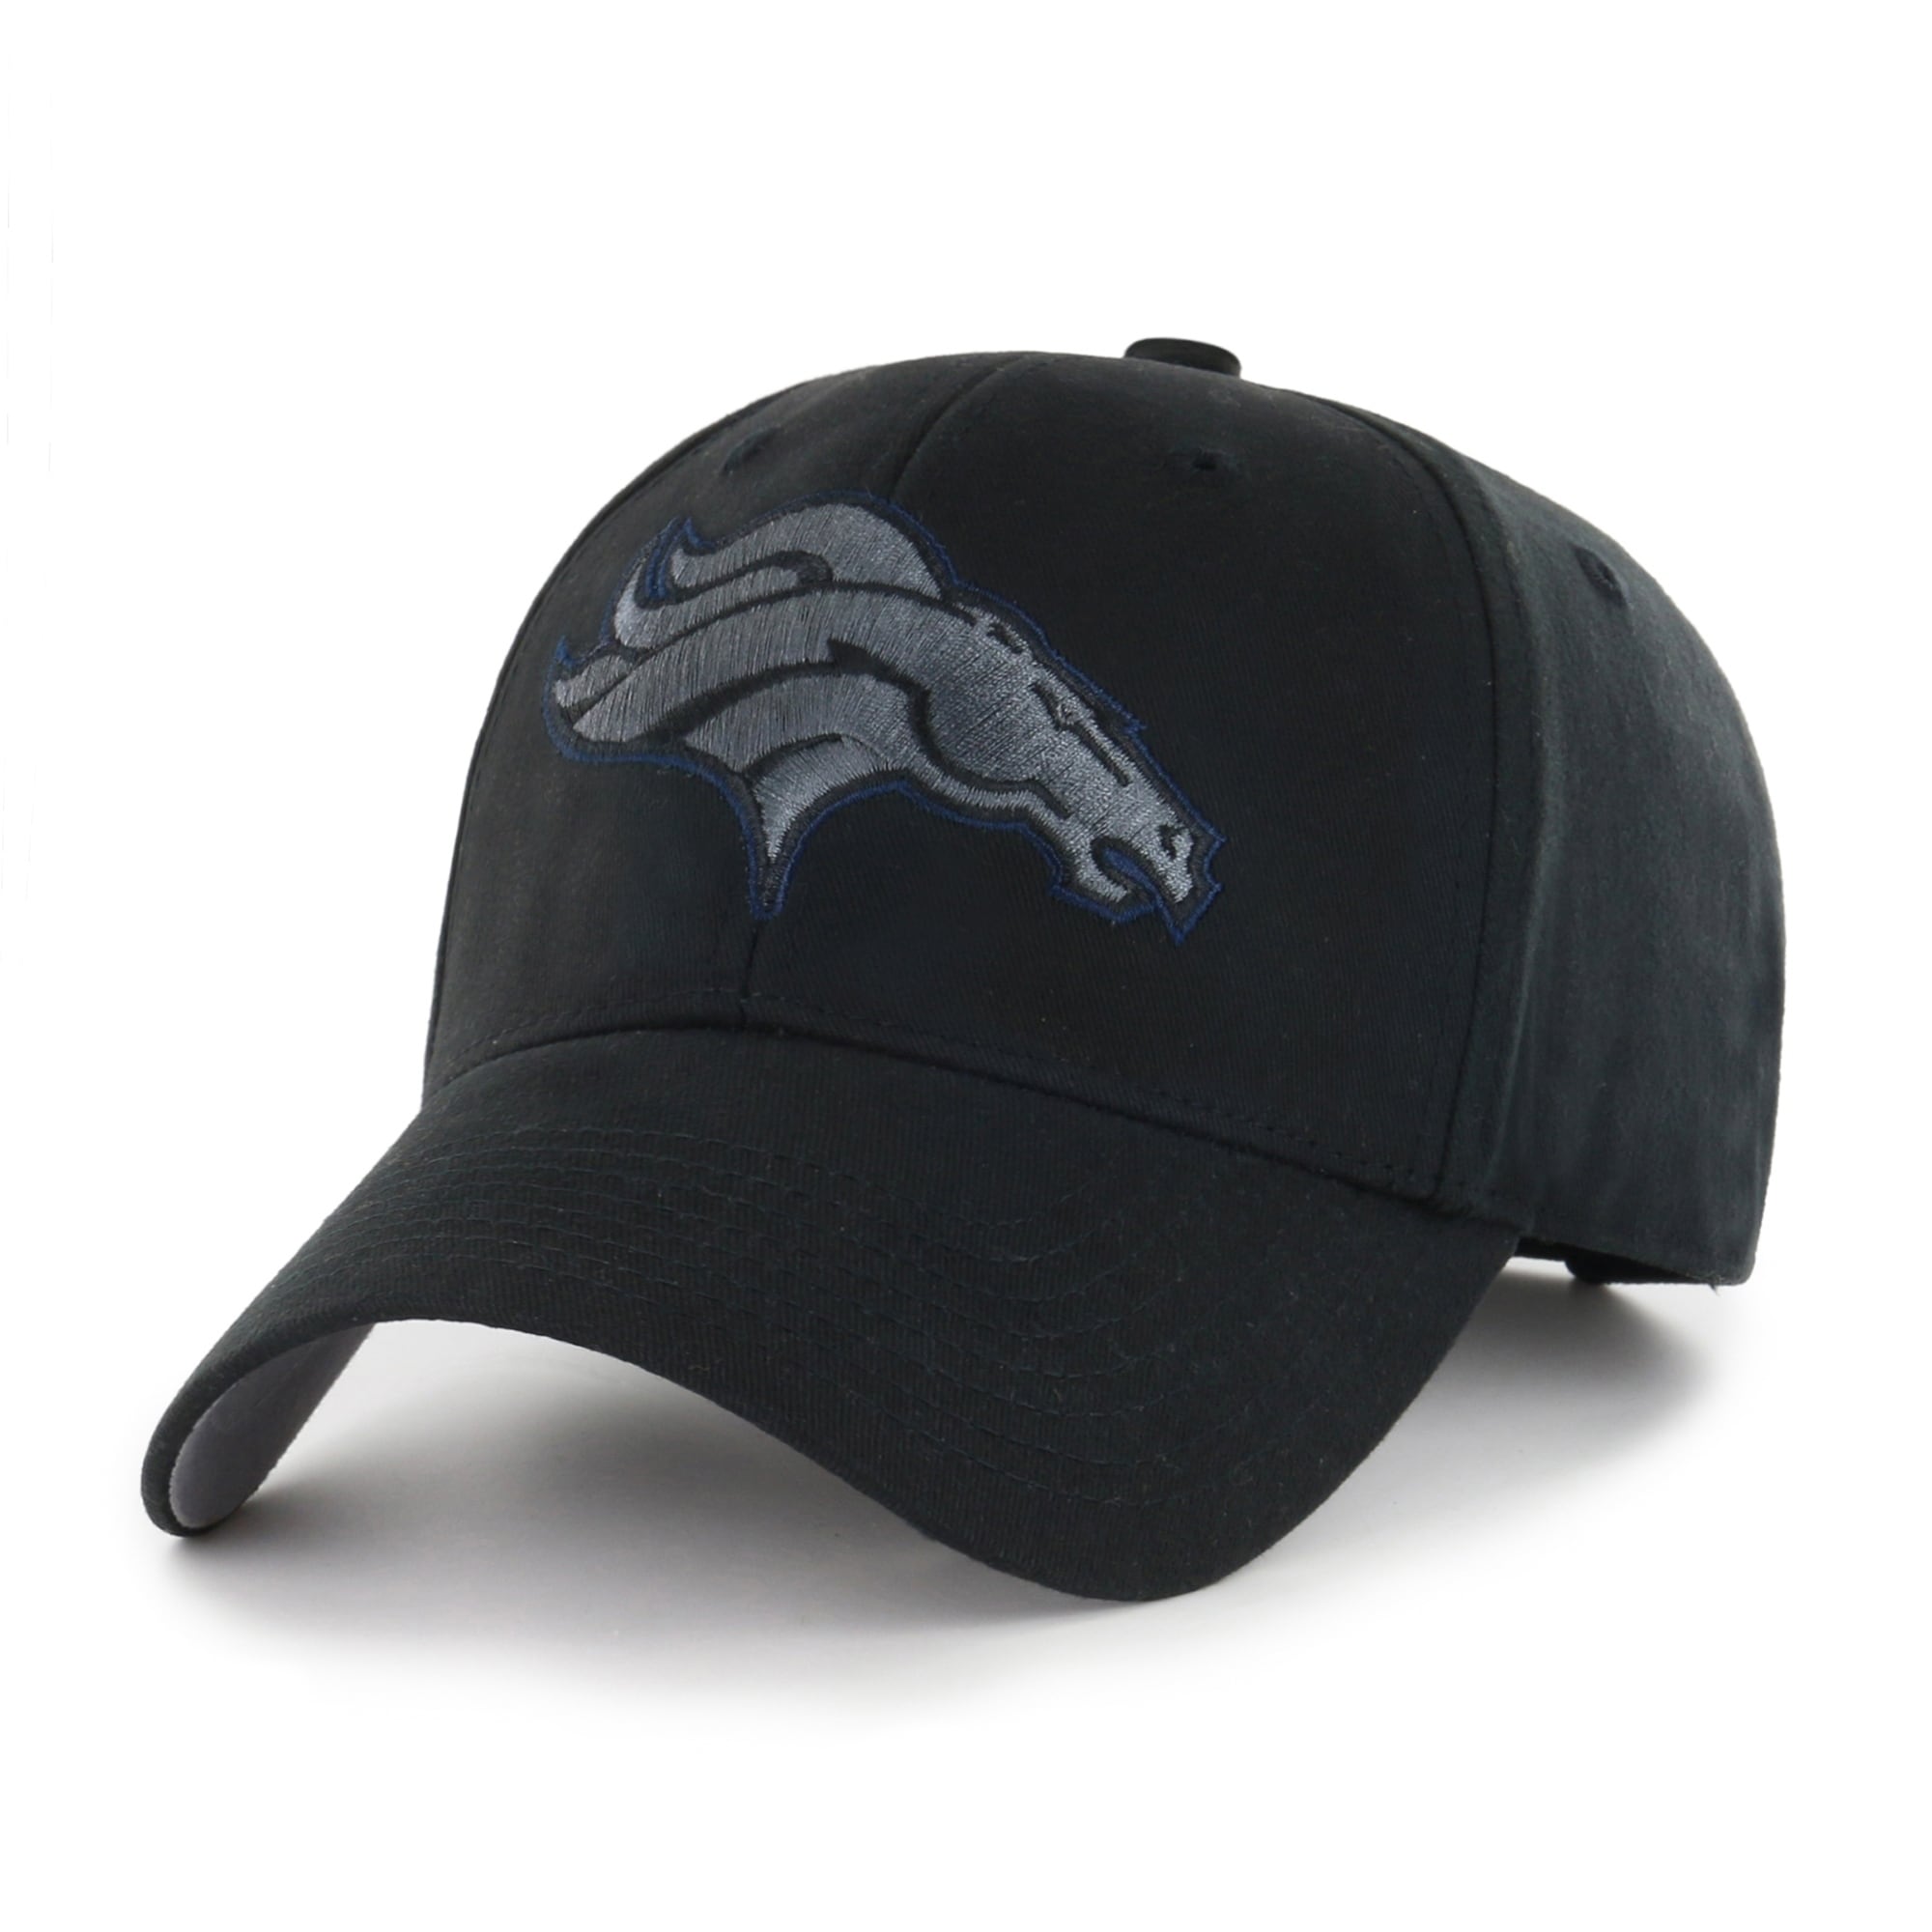 Shop Nfl Denver Broncos Black Classic Adjustable Hat Free